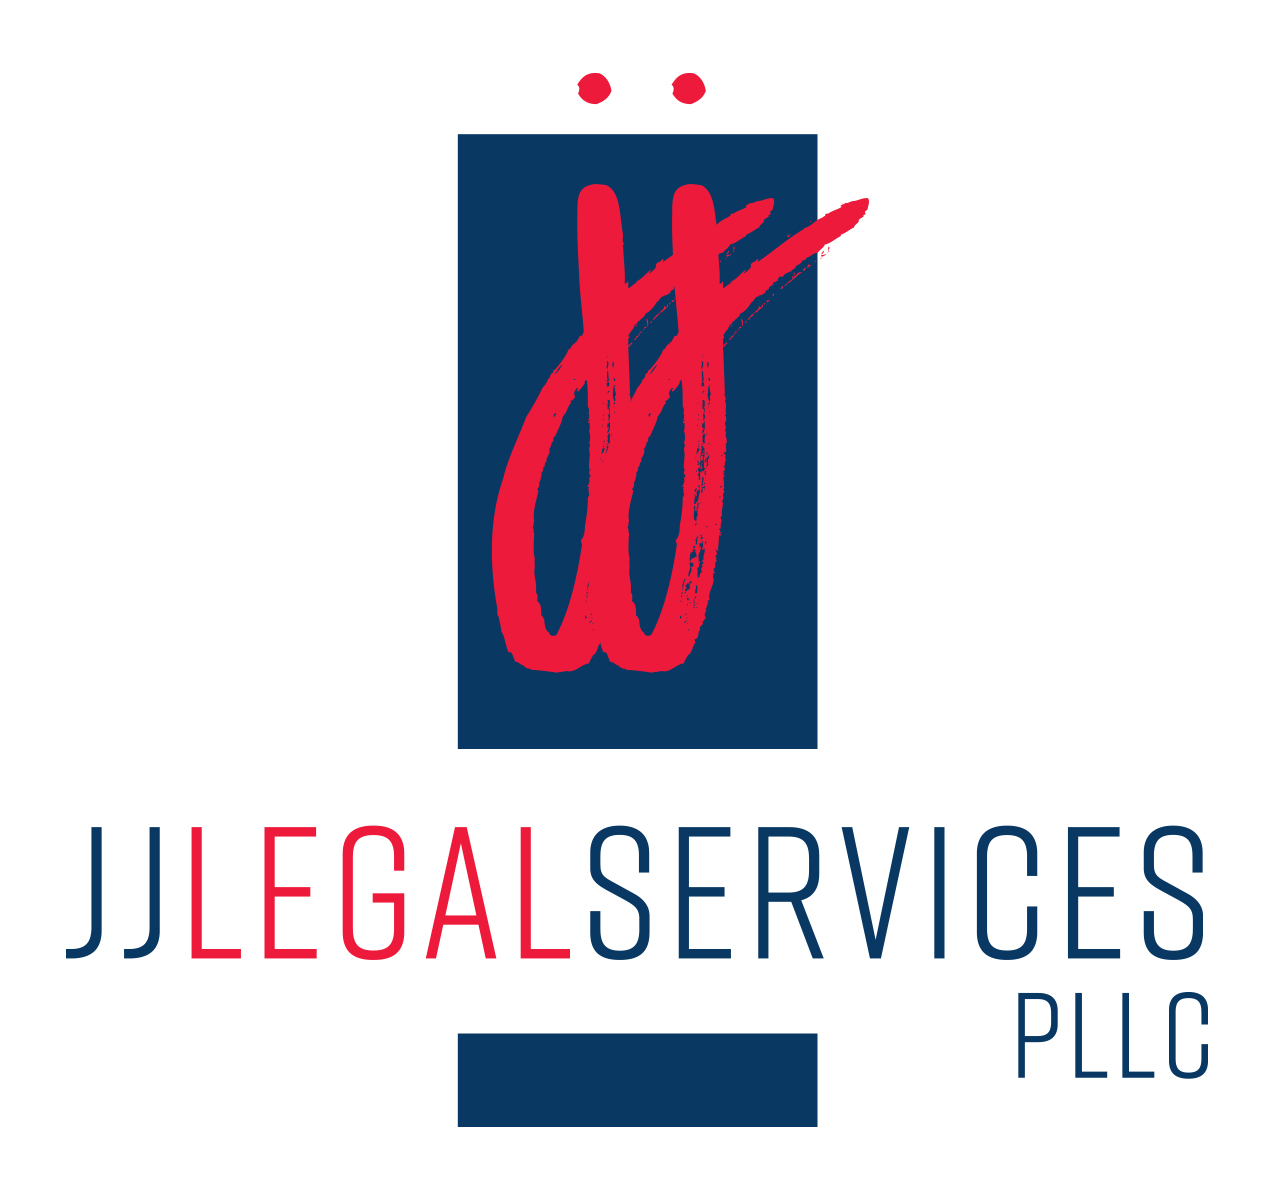 JJ Legal Services, PLLC